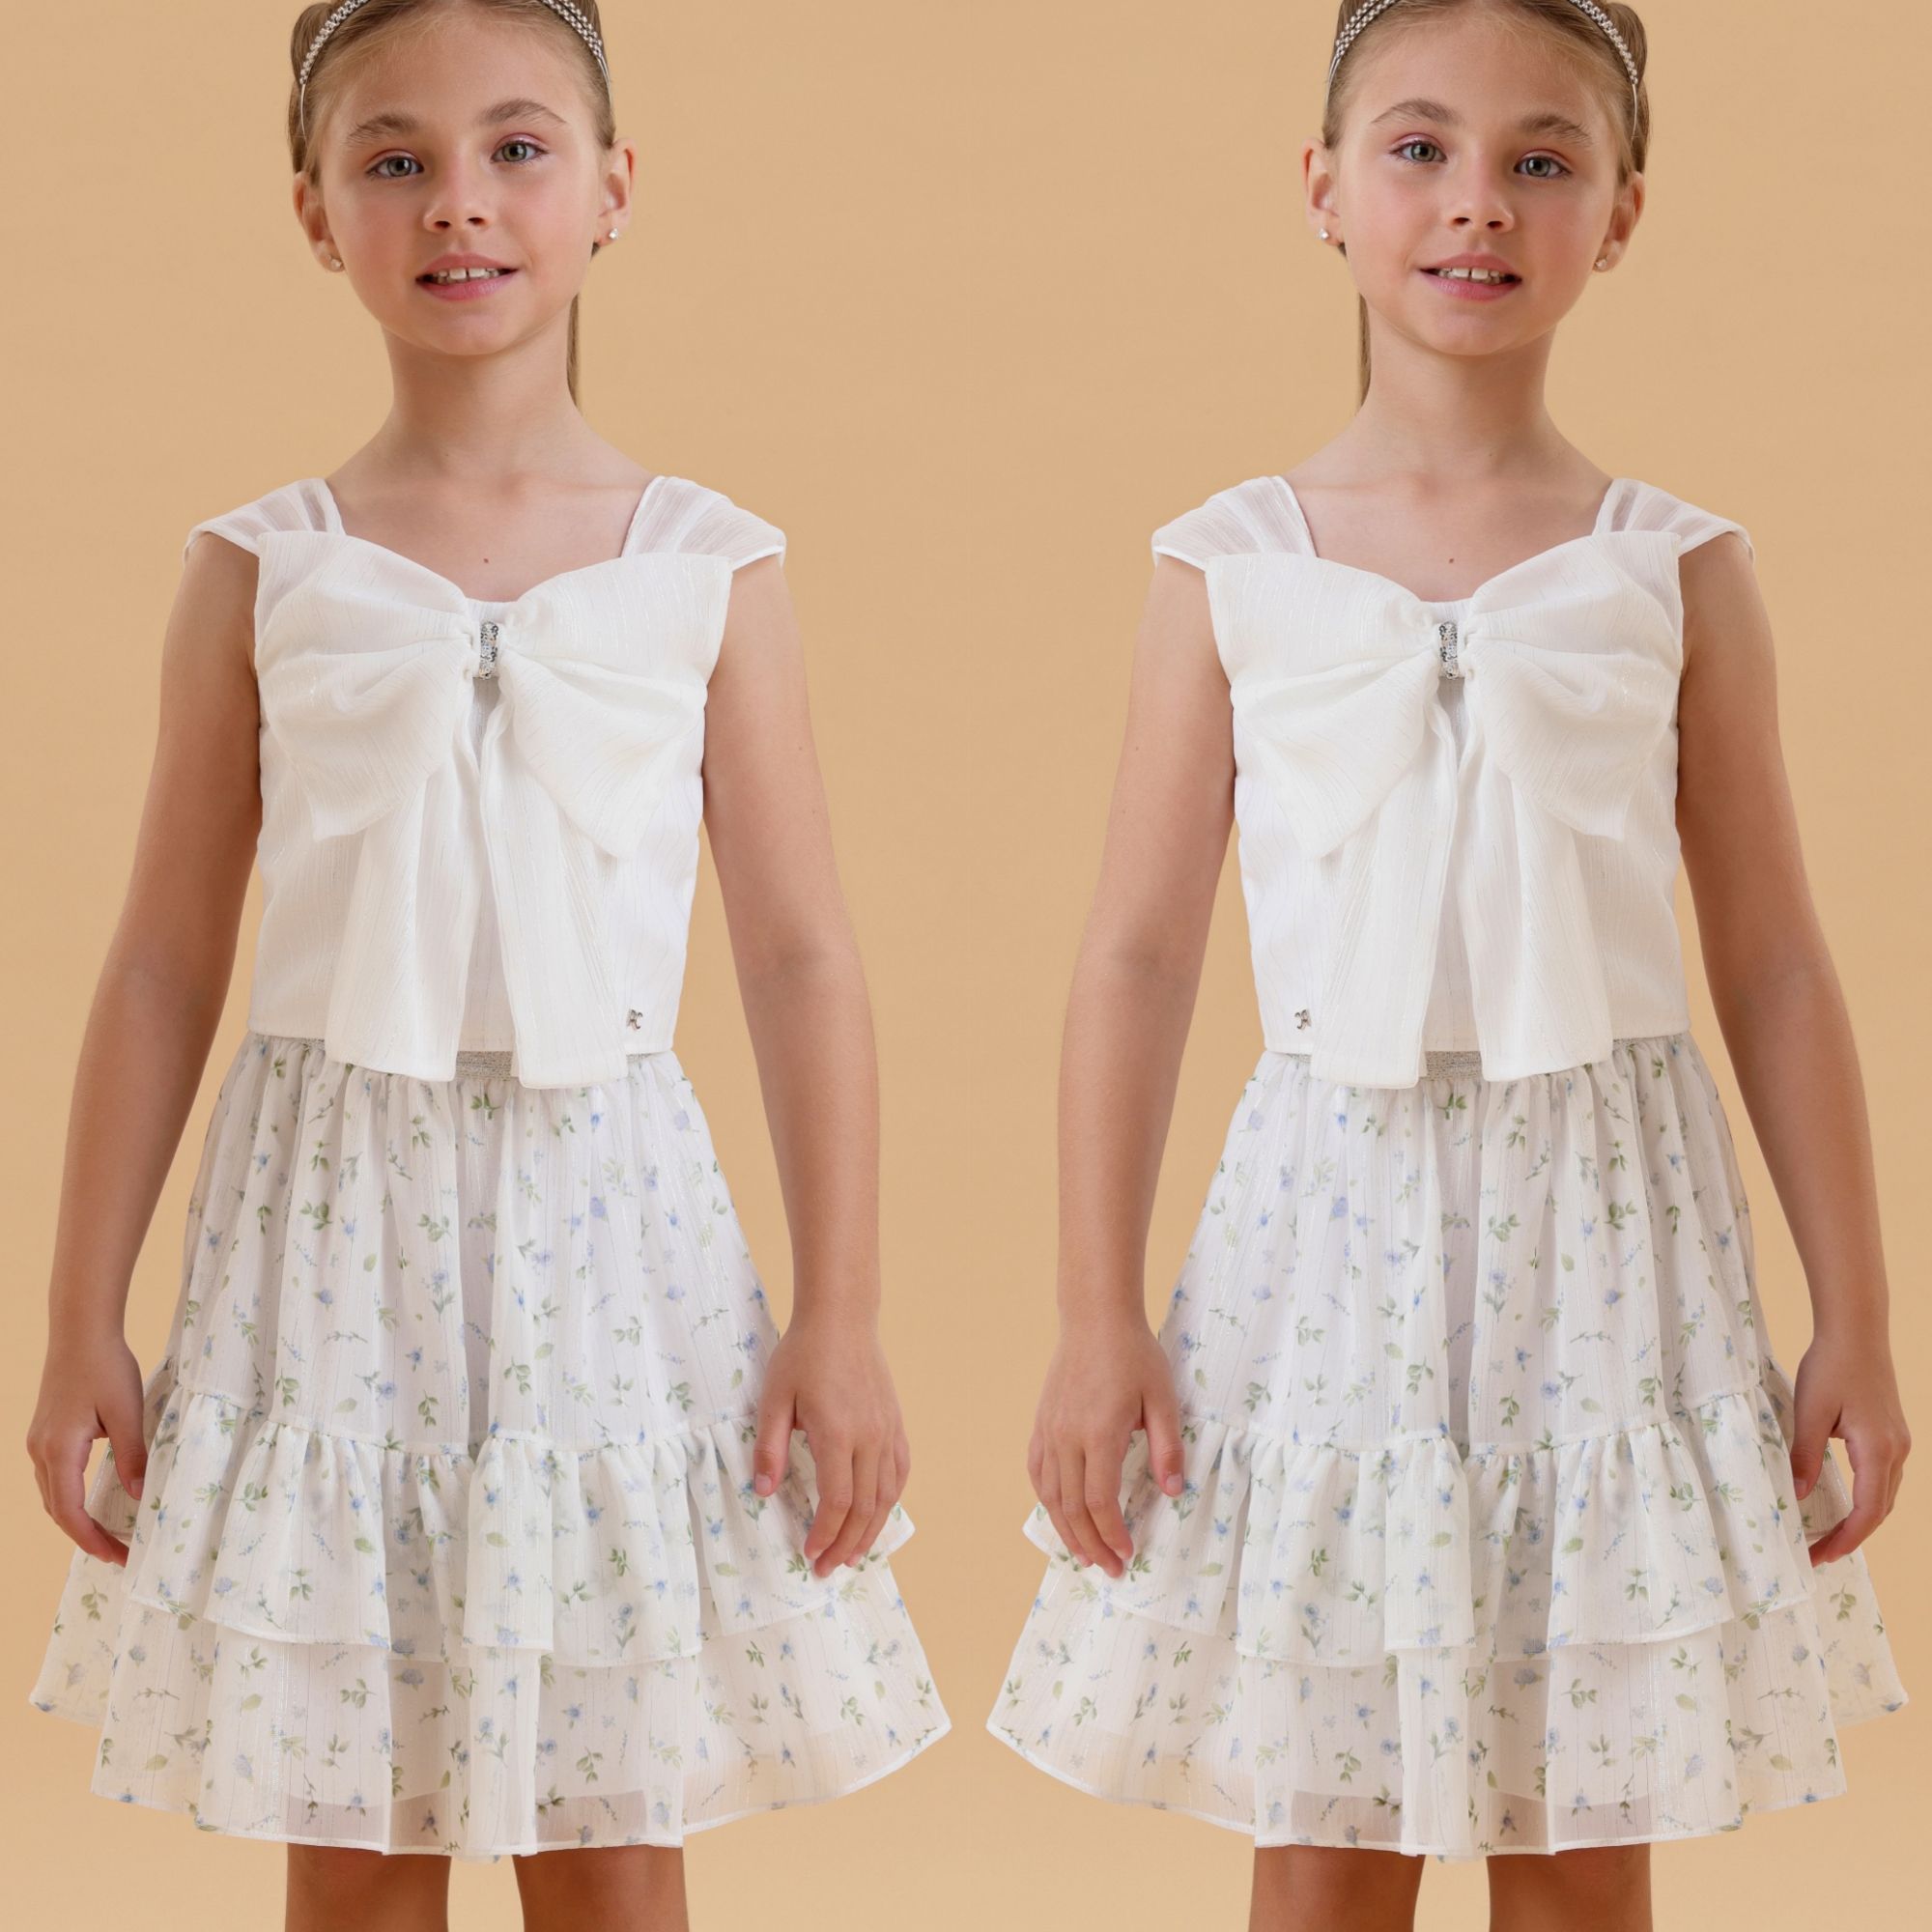 Conjunto Infantil Petit Cherie Blusa Branca Listras Brilho e Laço e Saia Listras Brilho e Flores